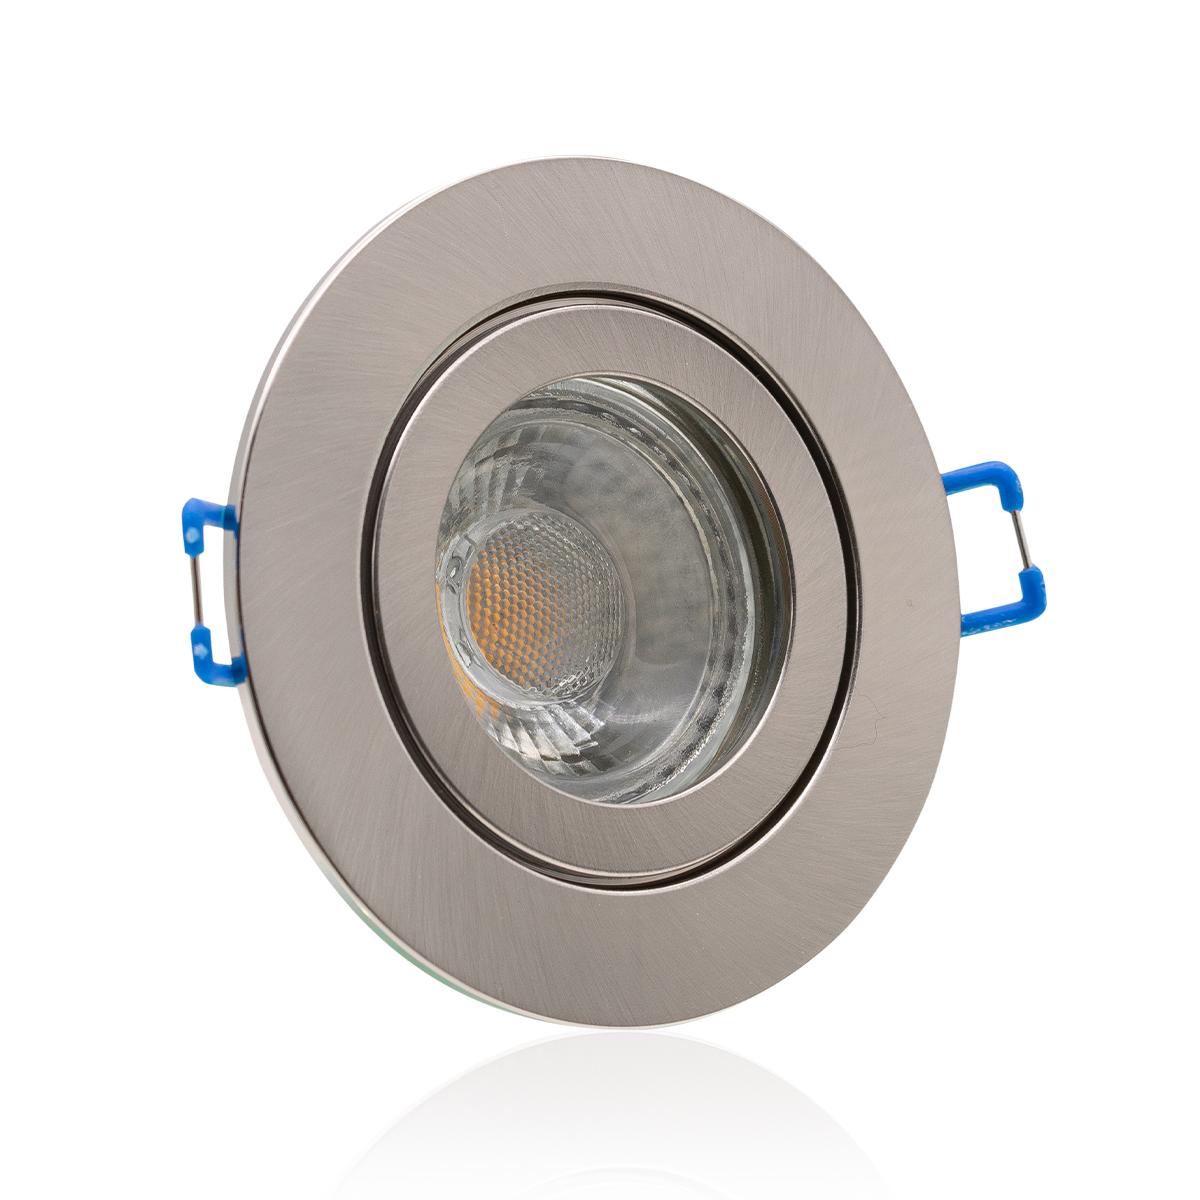 Einbauspot IP44 rund - Abdeckring:  Edelstahl-gebürstet - LED Leuchtmittel:  GU10 5W neutralweiß